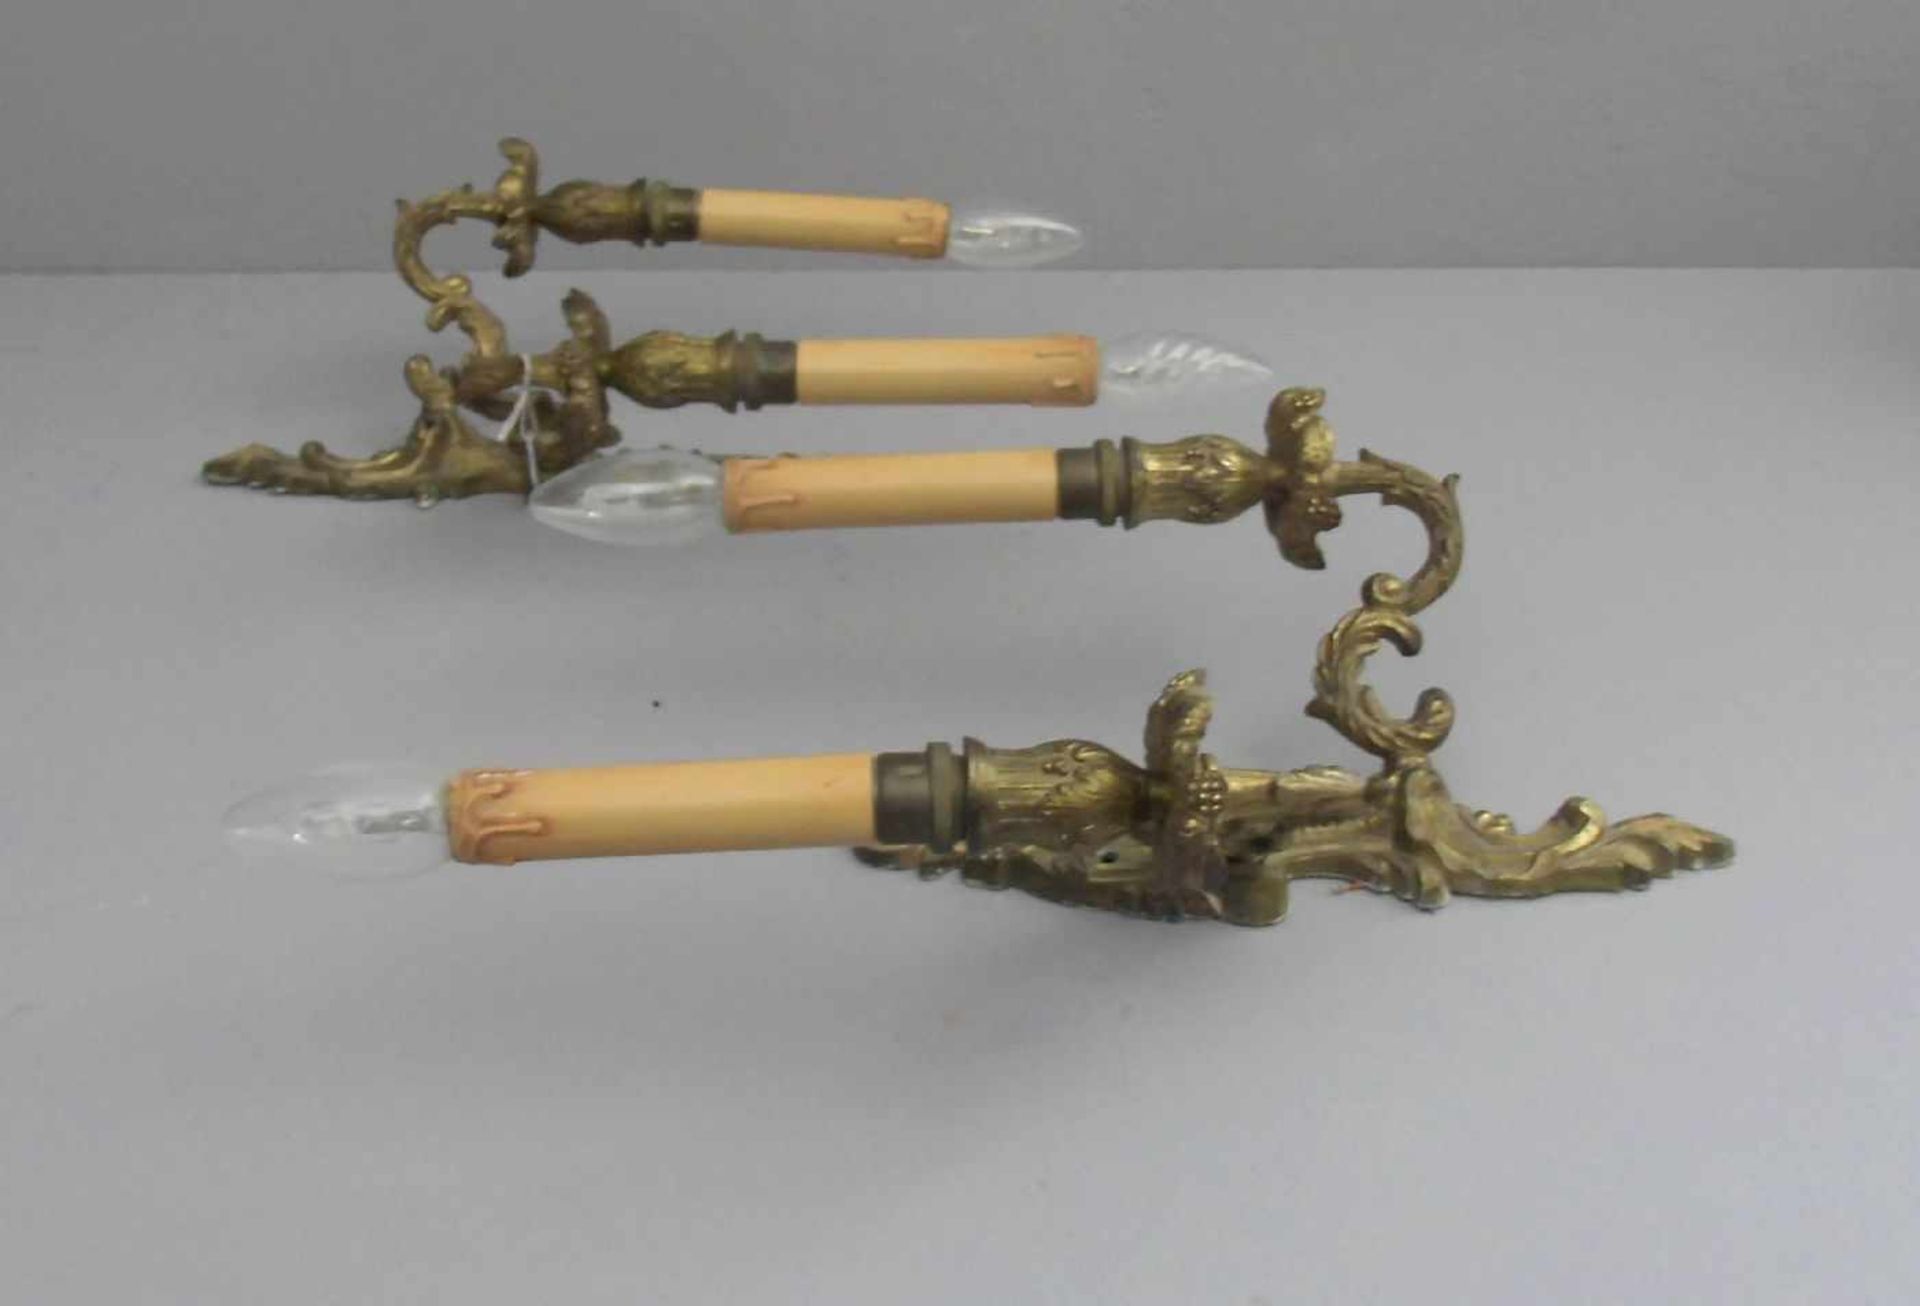 PAAR WANDLEUCHTER / scones, 1.H. 20 Jh., Gelbguss, jeweils 2-flammig elektrifiziert (ungeprüft). - Image 2 of 2